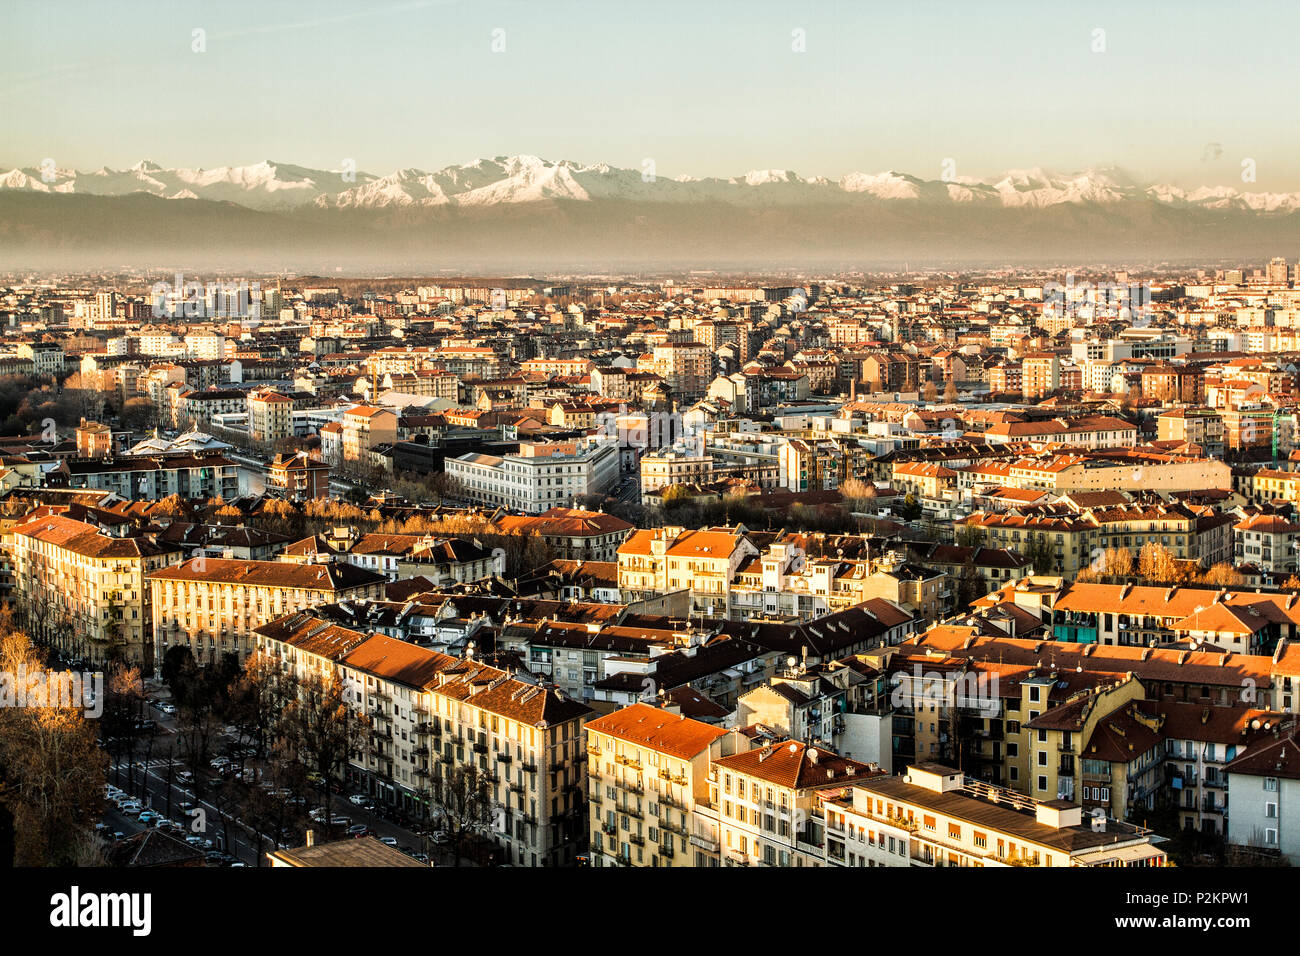 Vue de la ville de Turin depuis le sommet de la Mole Antonelliana, avec les Alpes en arrière-plan. Turin, Province de Turin, Italie. Banque D'Images